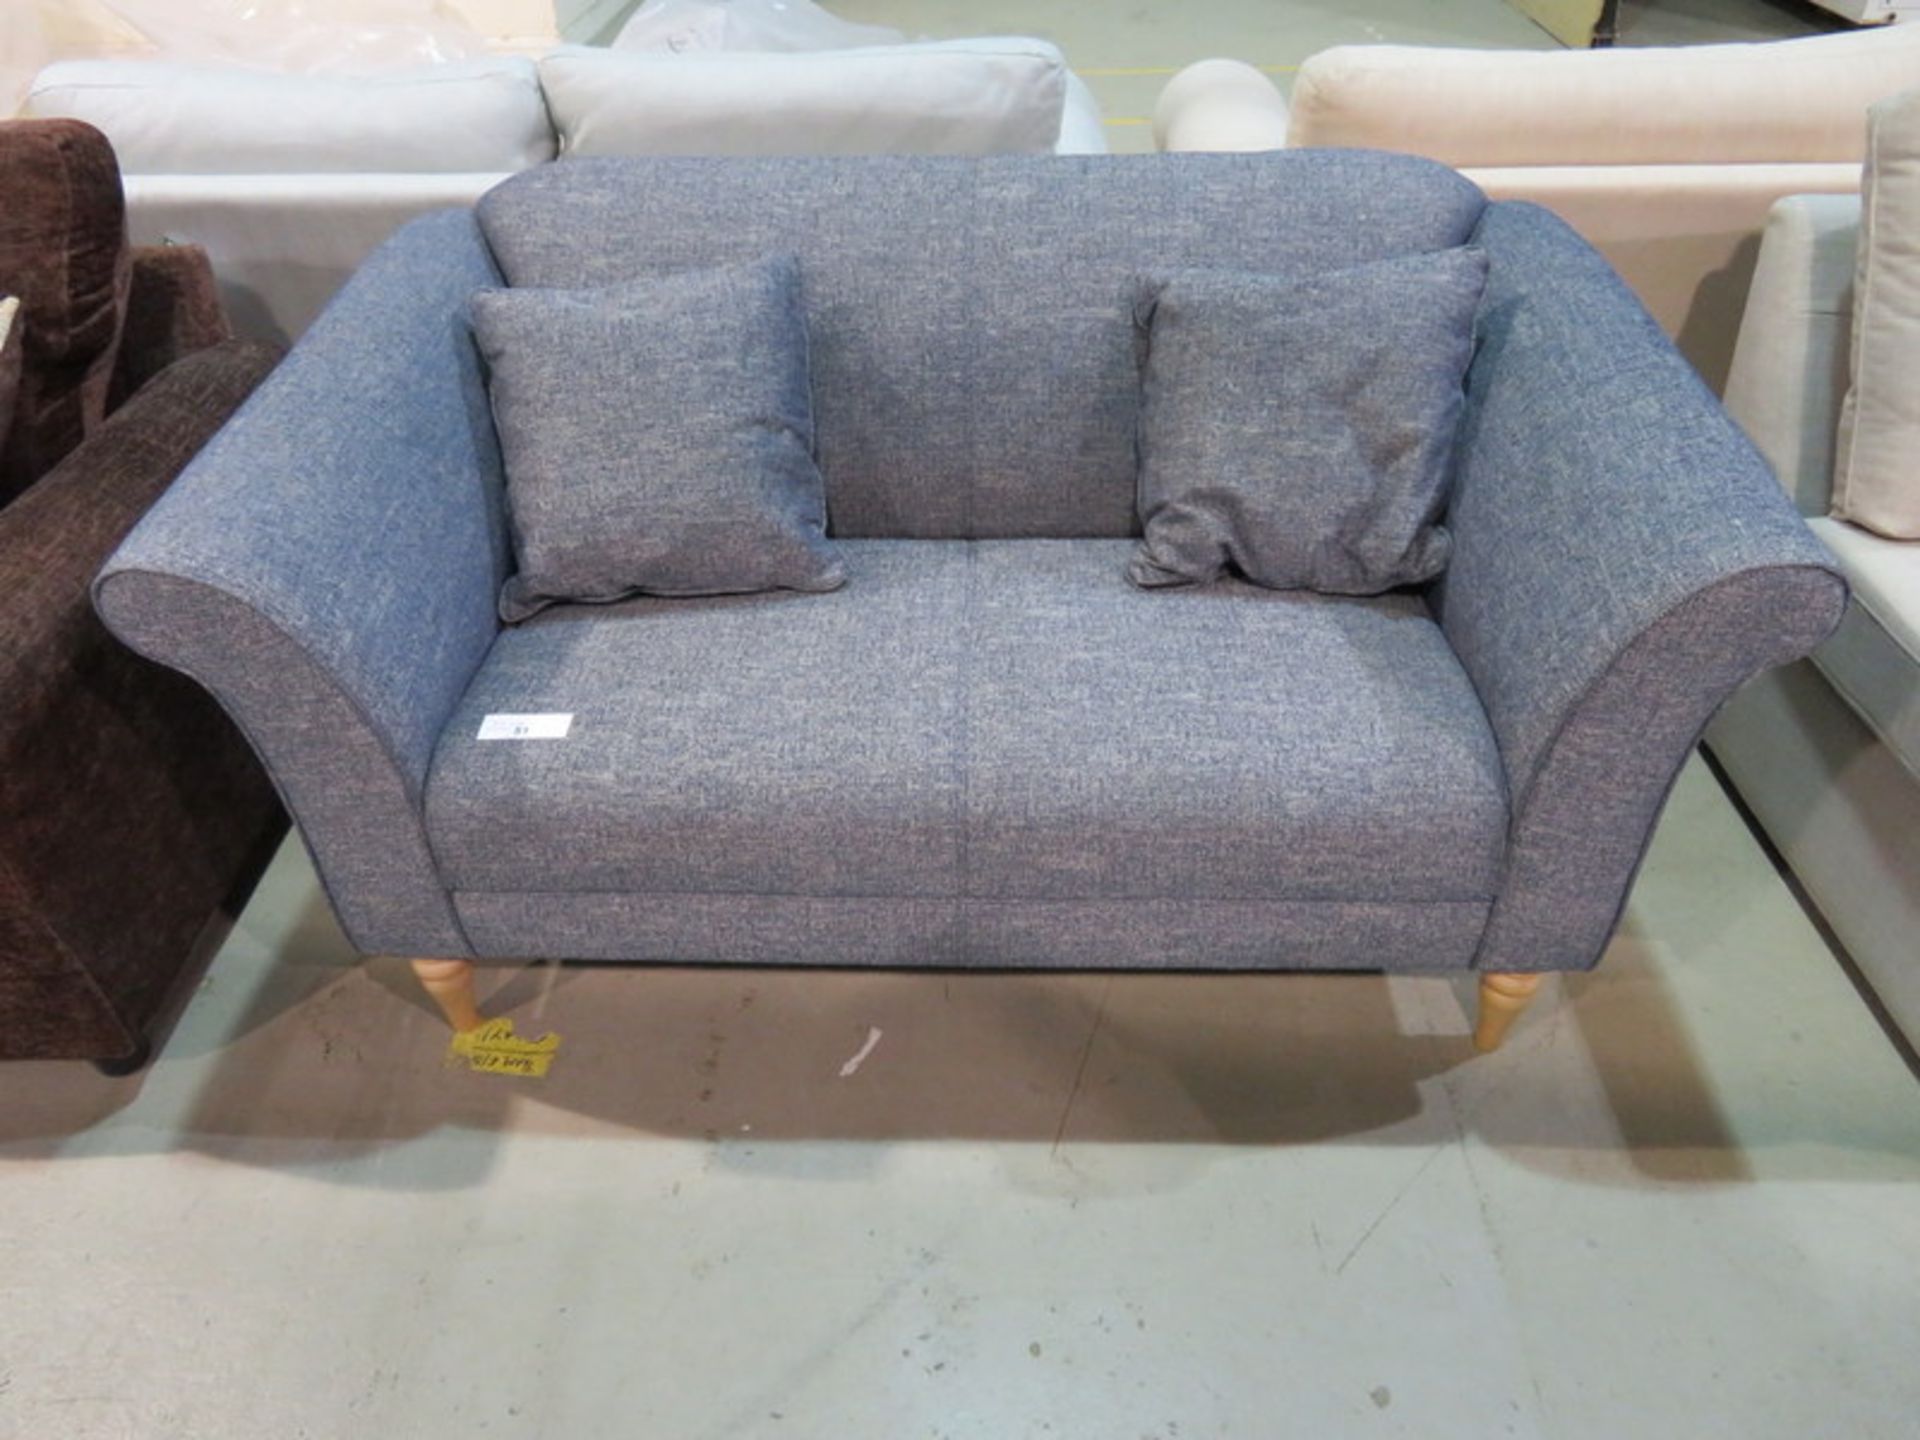 2 Seater blue sofa. Ex Display - 1510 x 830mm (LxD)